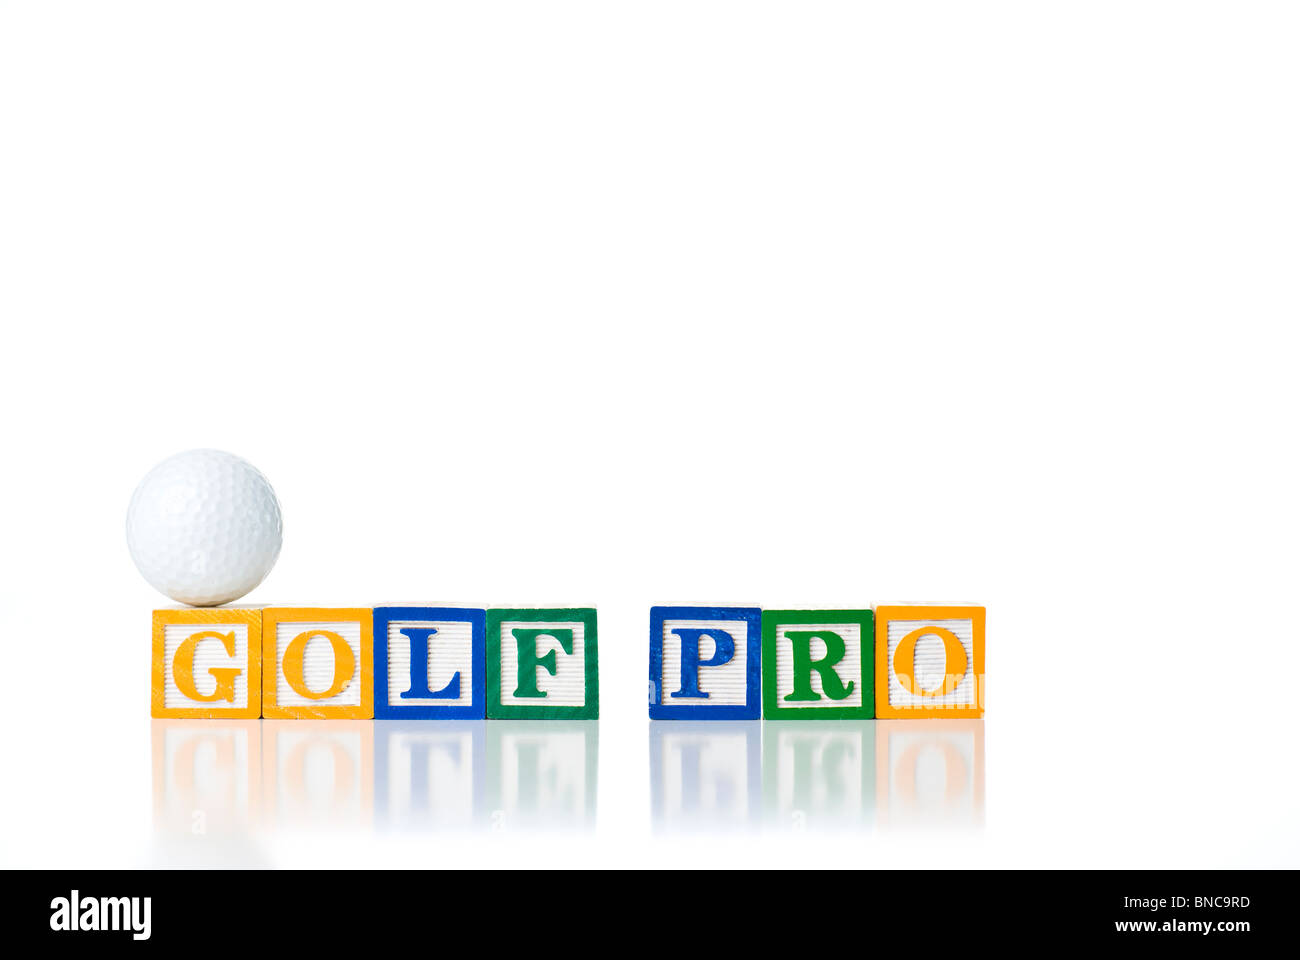 Enfants colorés blocks spelling GOLF PRO avec balle de golf Banque D'Images